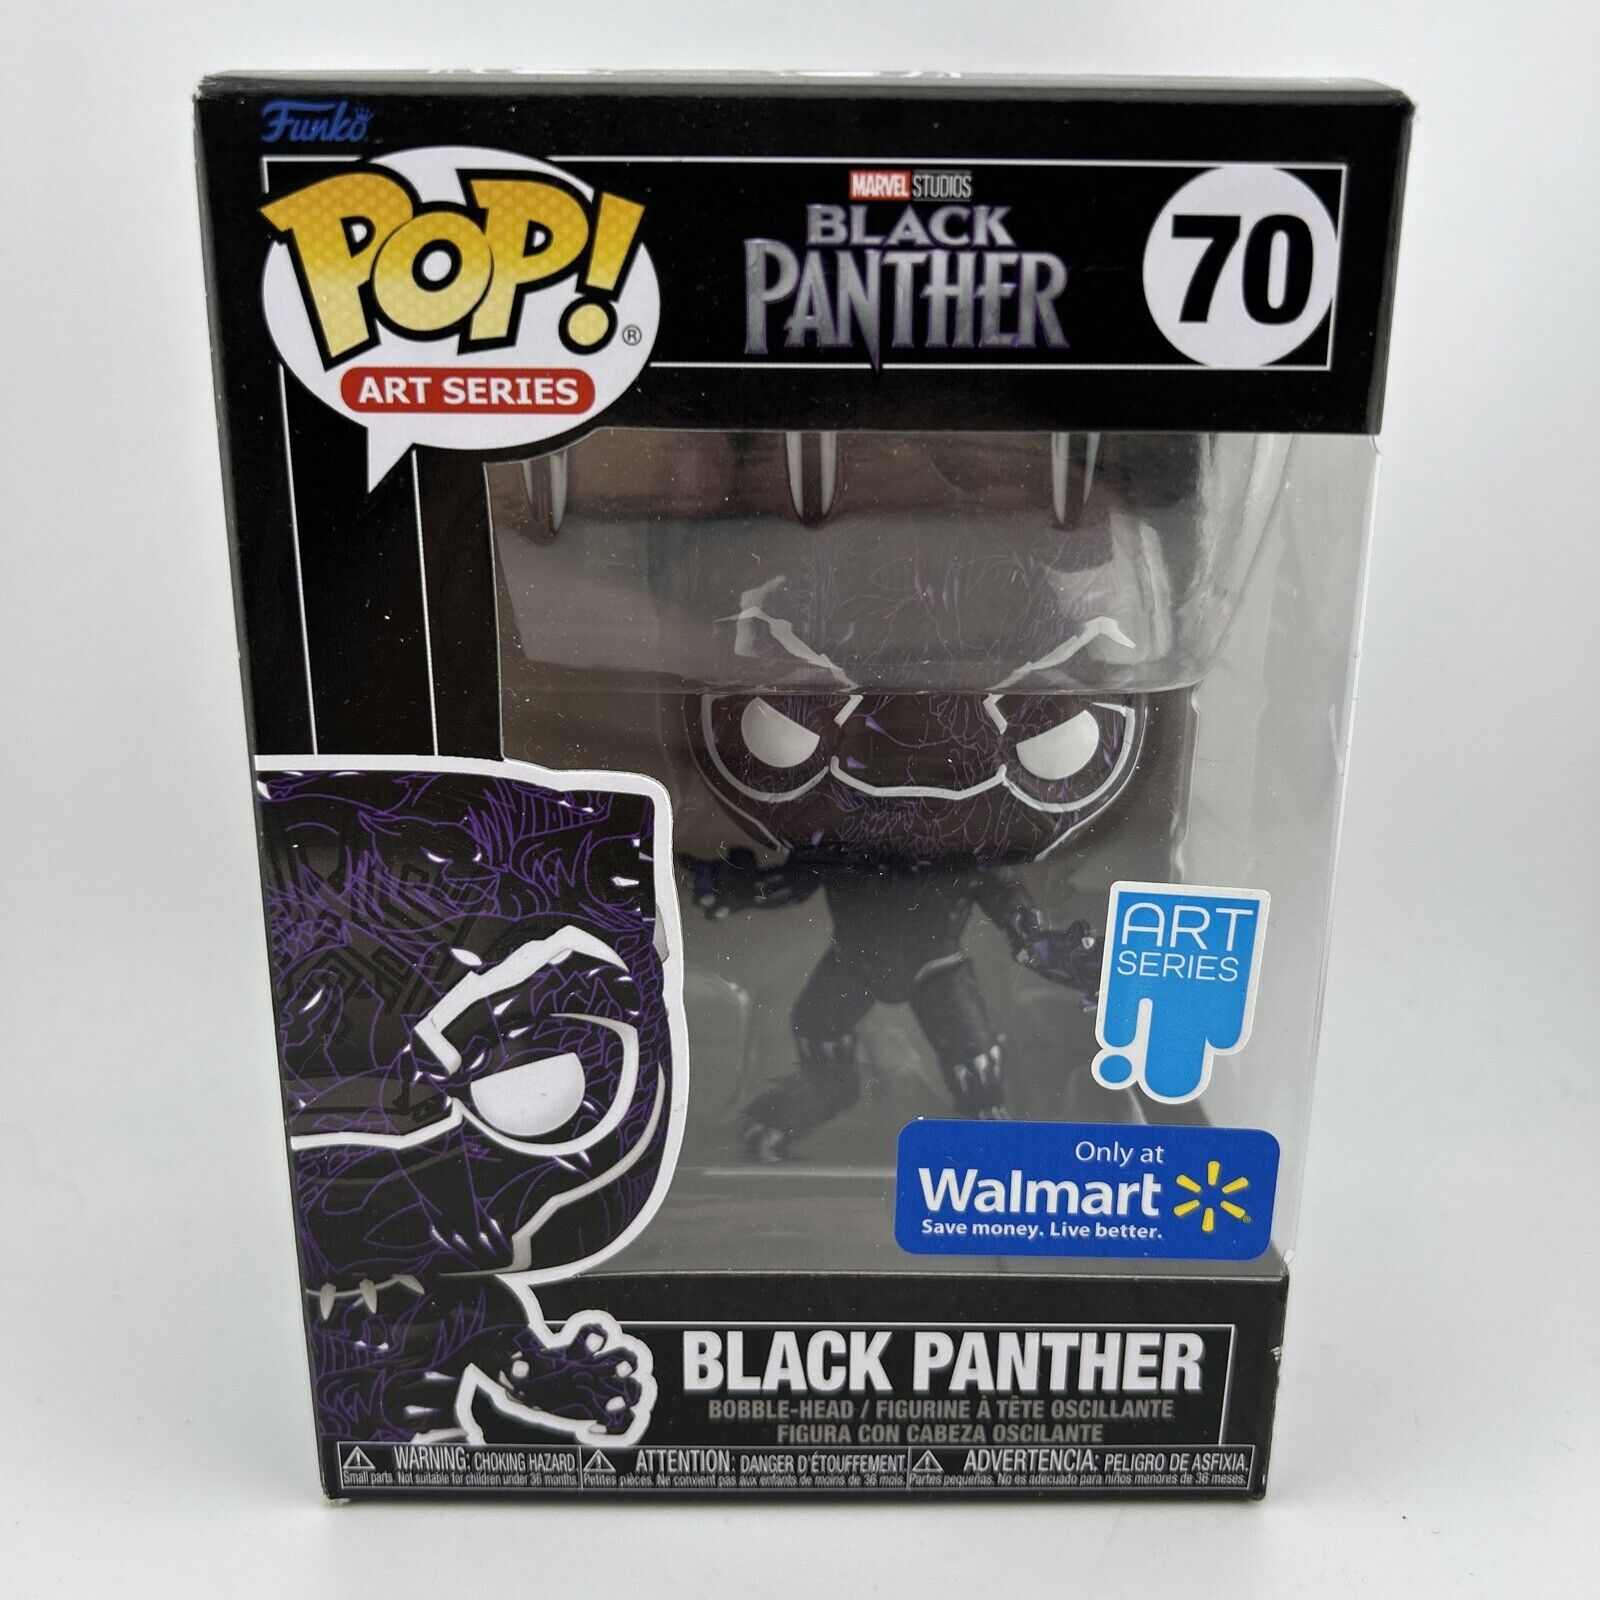 Funko Pop Art Series - BLACK PANTHER - Black Panther - Walmart - #70